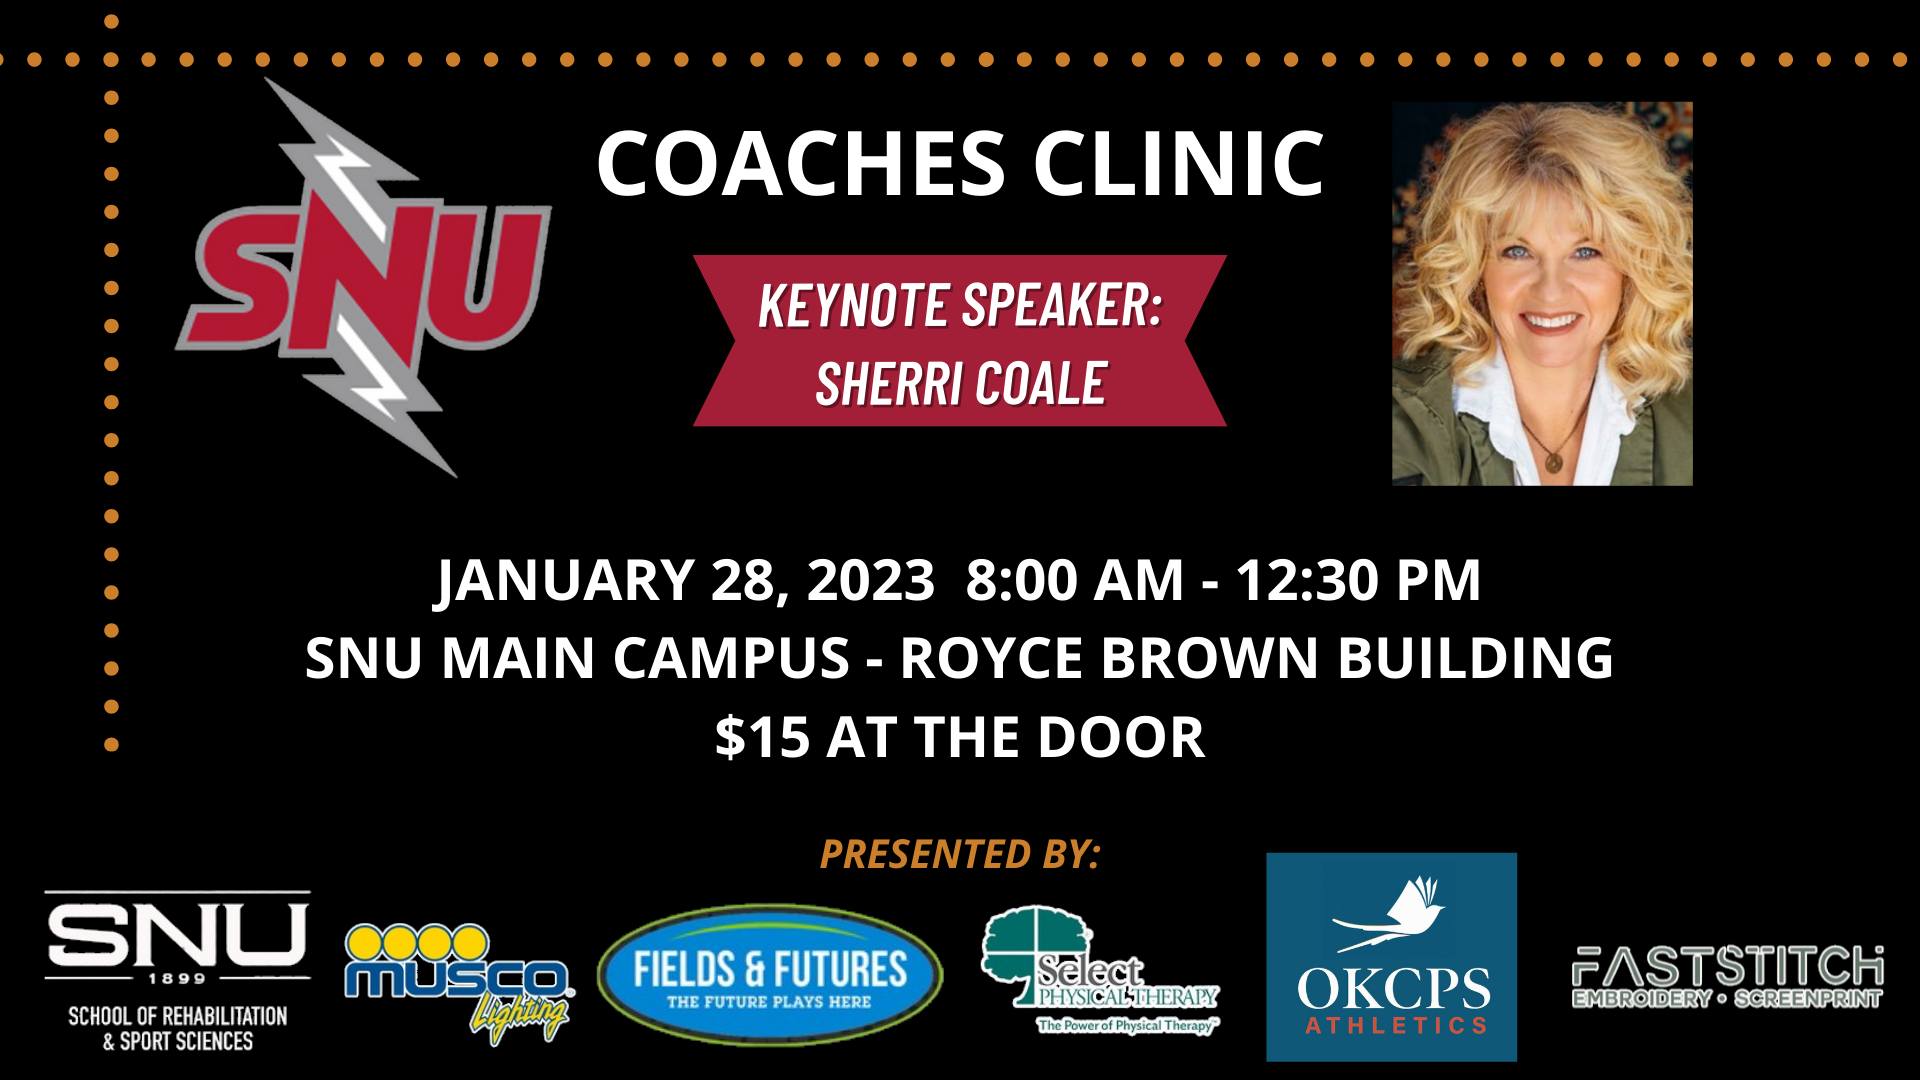 SNU to host Coaches Clinic with Keynote Speaker Sherri Coale